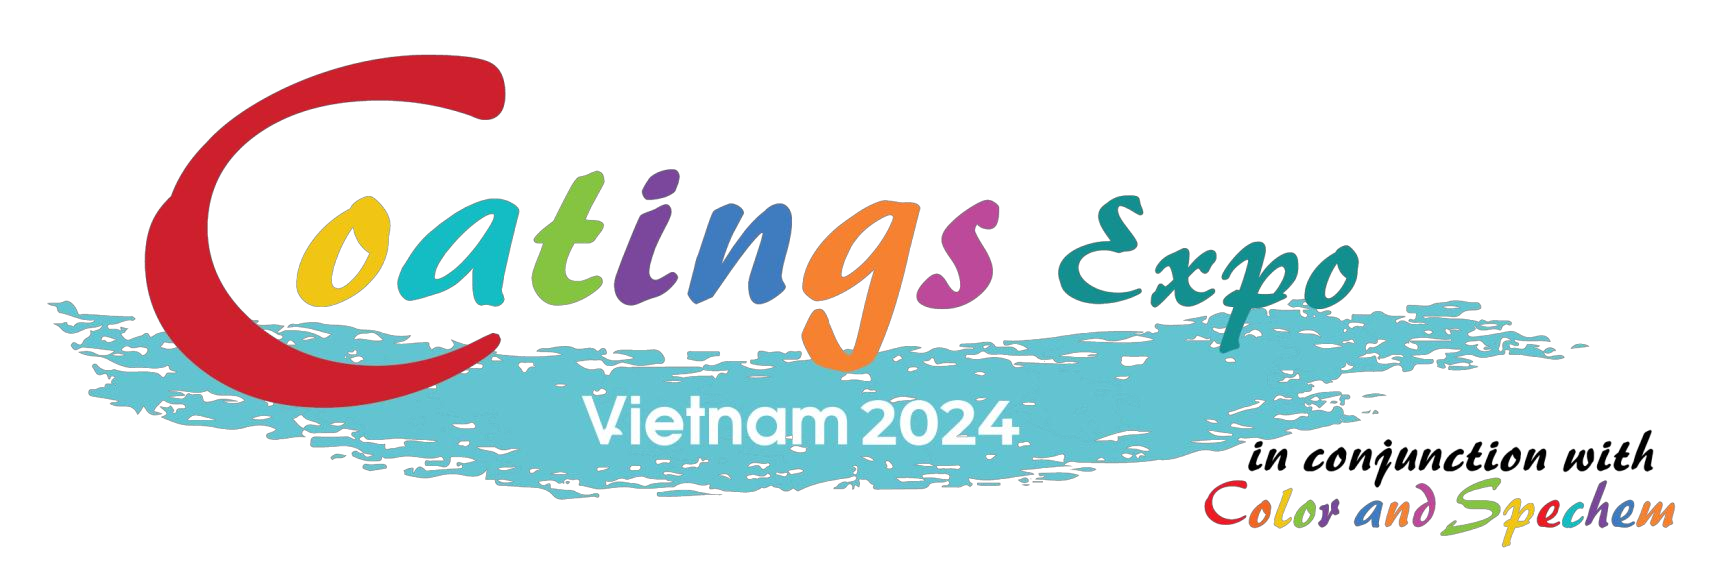 2024 年越南涂料展览会